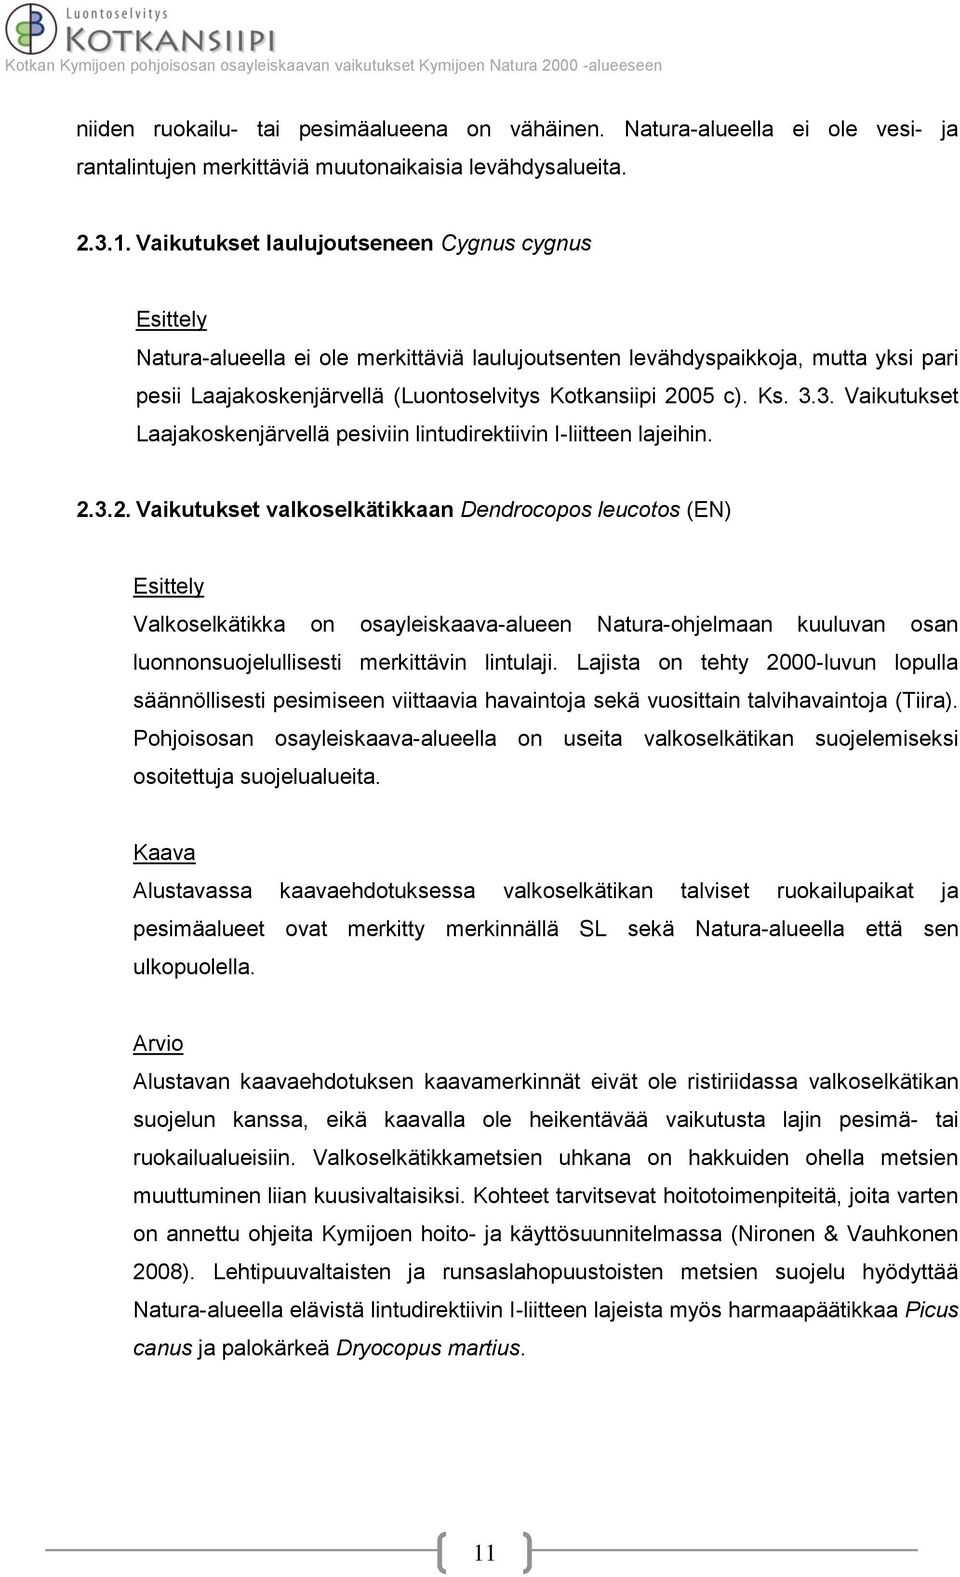 3. Vaikutukset Laajakoskenjärvellä pesiviin lintudirektiivin I-liitteen lajeihin. 2.